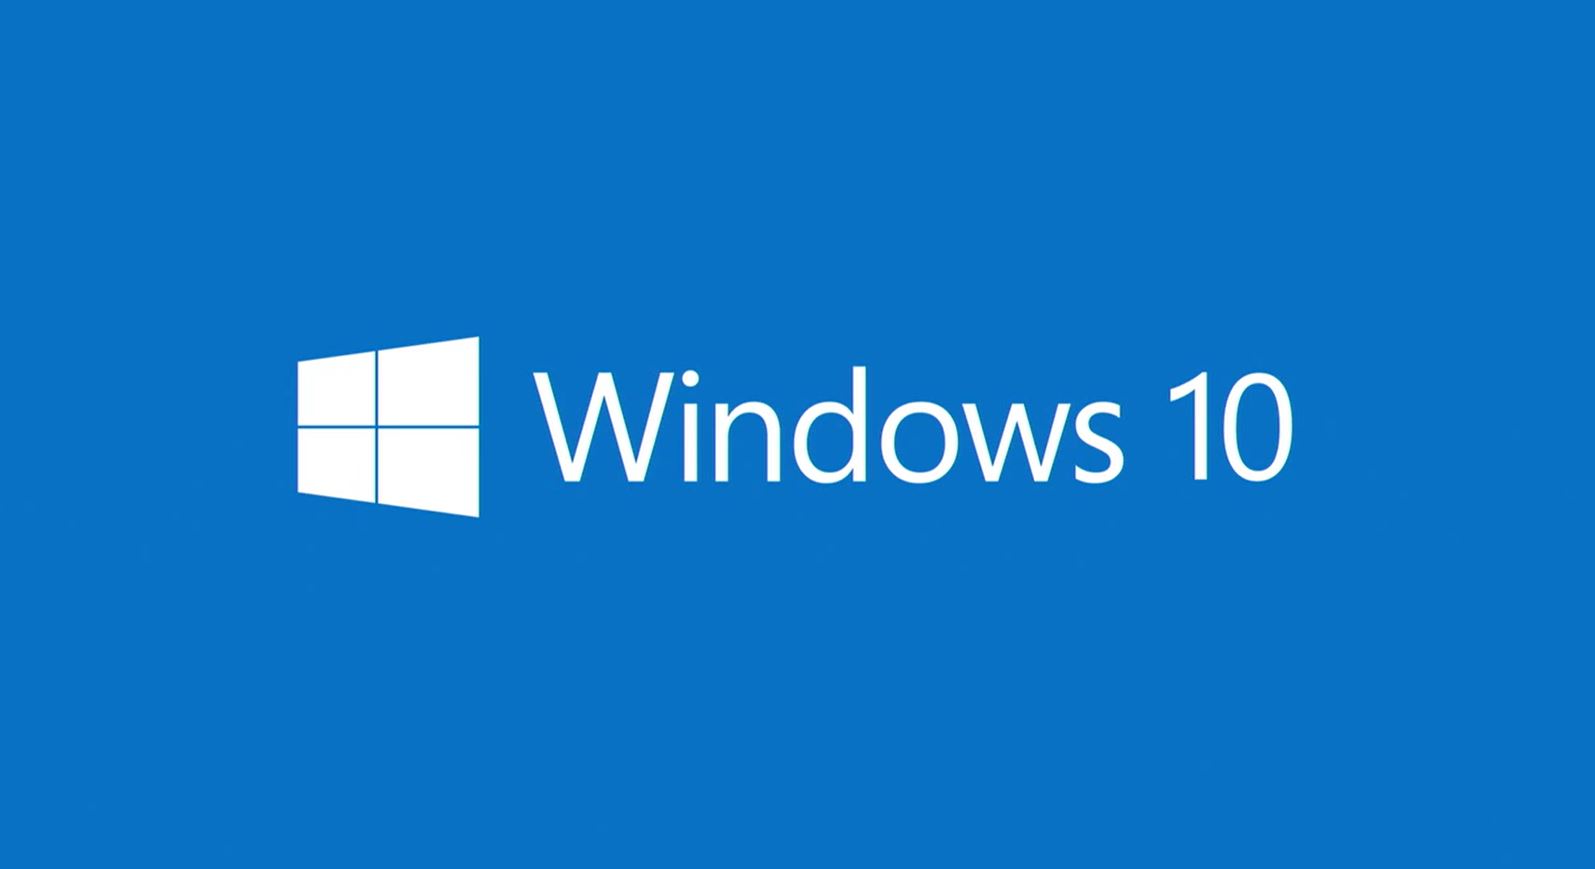 Compra con Grupo Deco tu suscripción completa a Microsoft Windows 10 - México